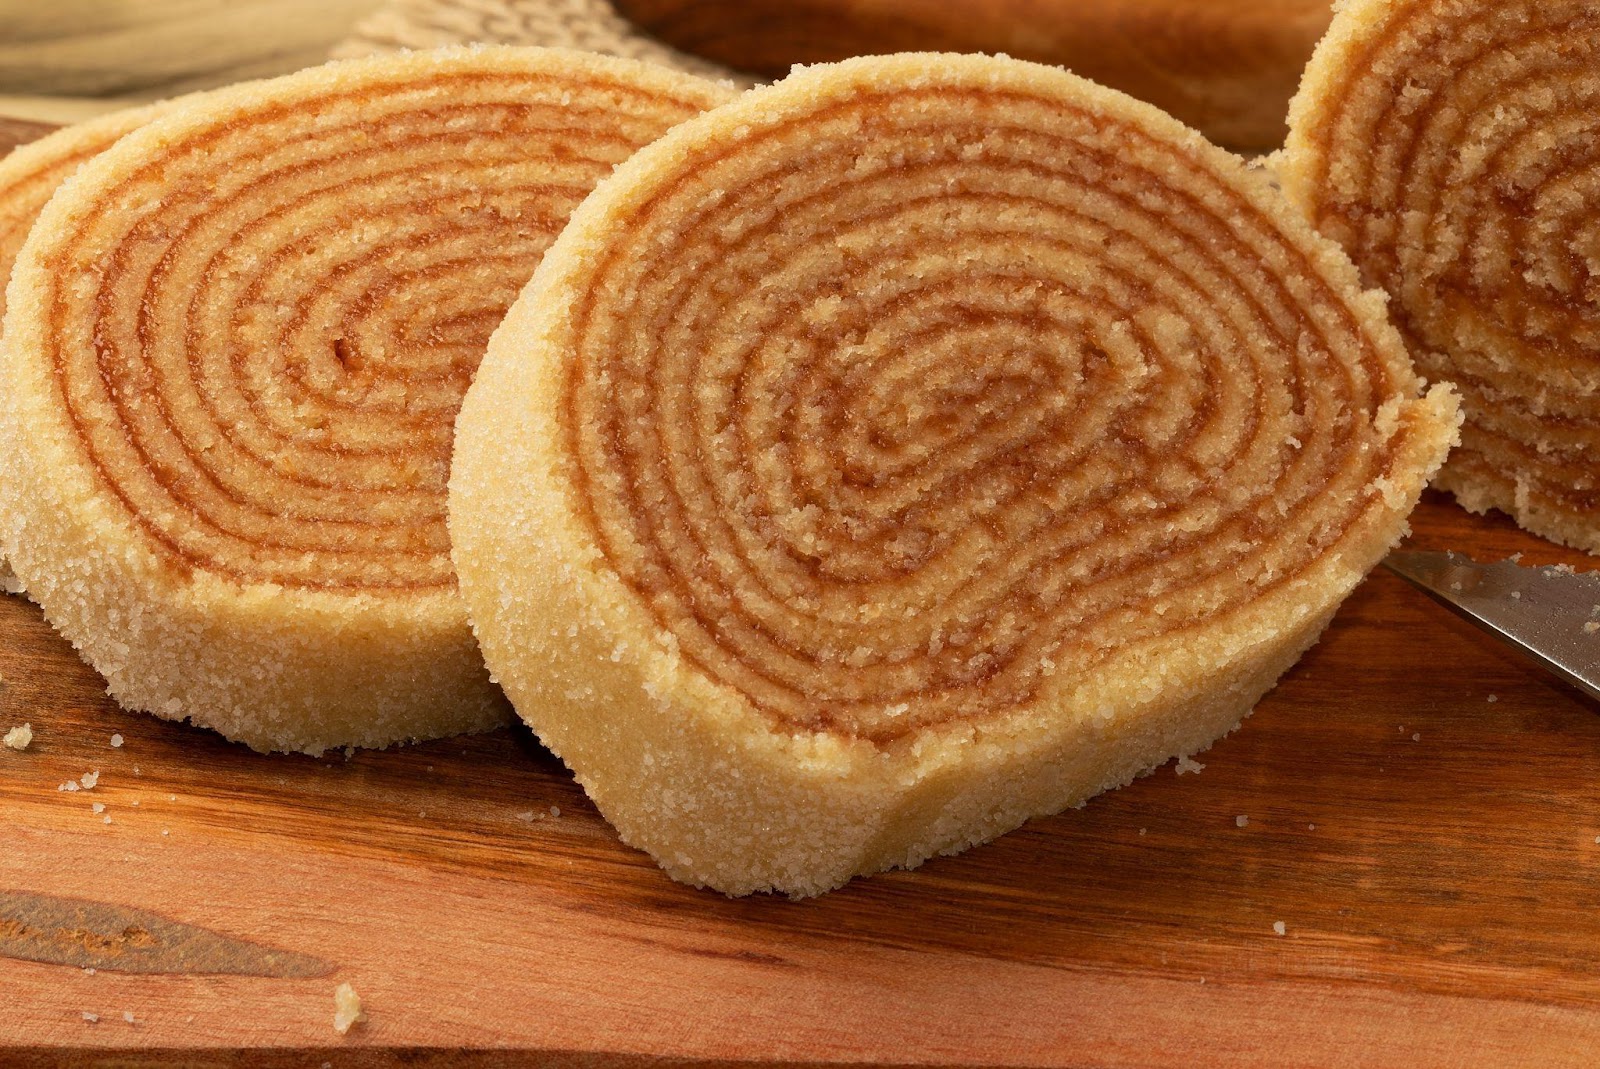 Tradicional bolo de rolo, da culinária pernambucana. Fatias de bolo com finas camadas de recheio de goiaba.